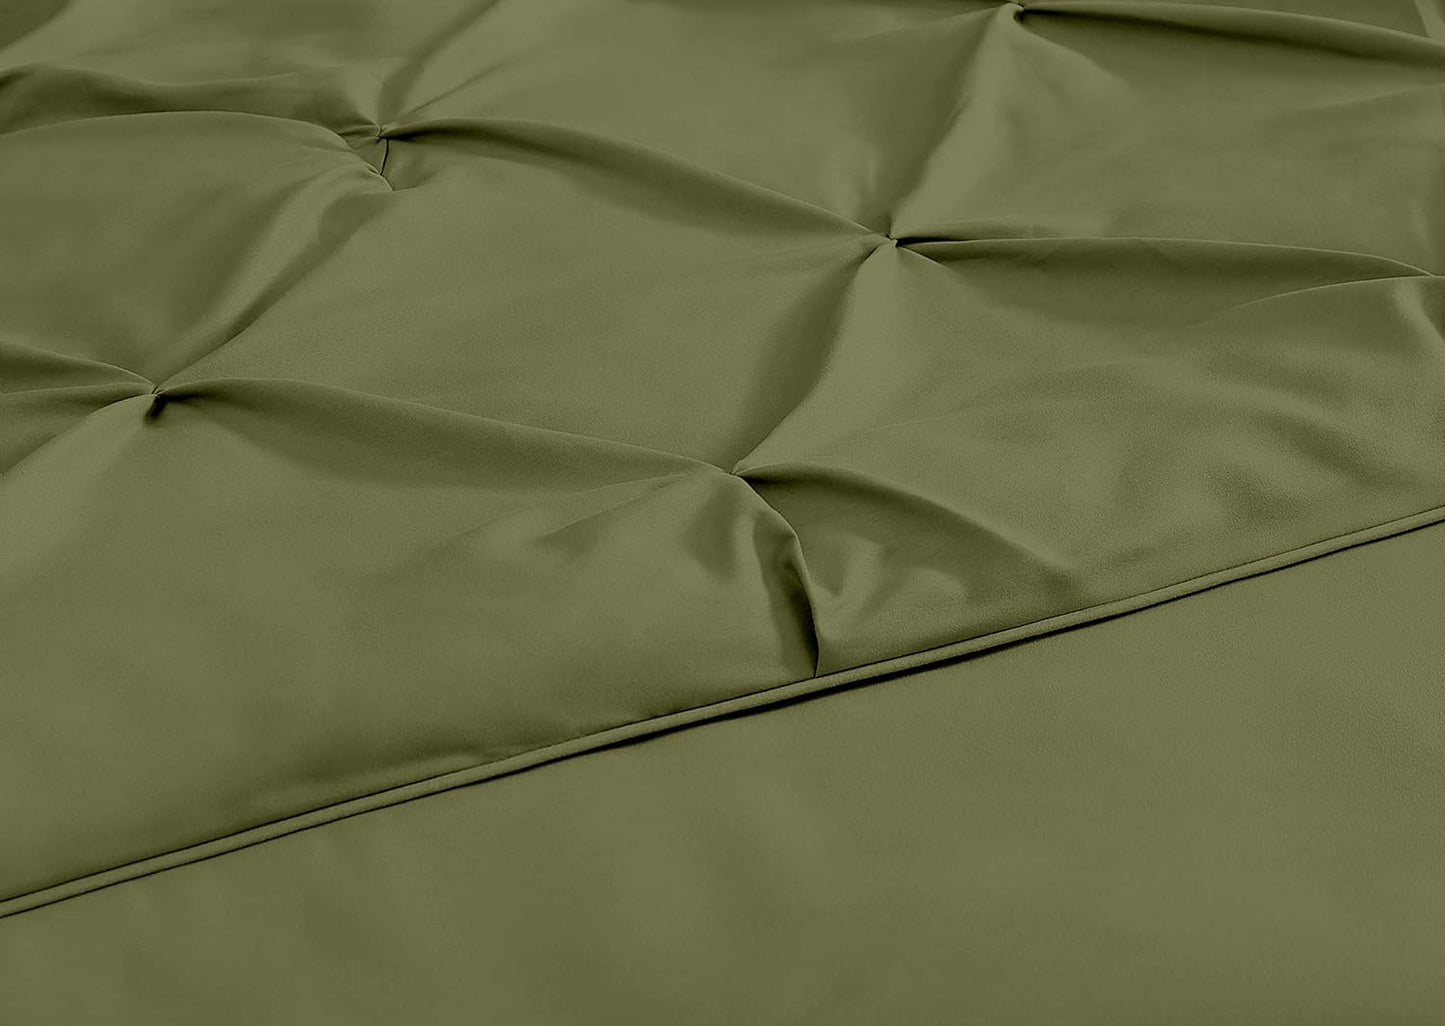 Berlin Olive Green Pinch Pleat Full Comforter Set 3-Piece (1 Comforter and 2 Pillow Shams) Soft Pintuck Lightweight All Season Microfiber Comforter Bedding Set